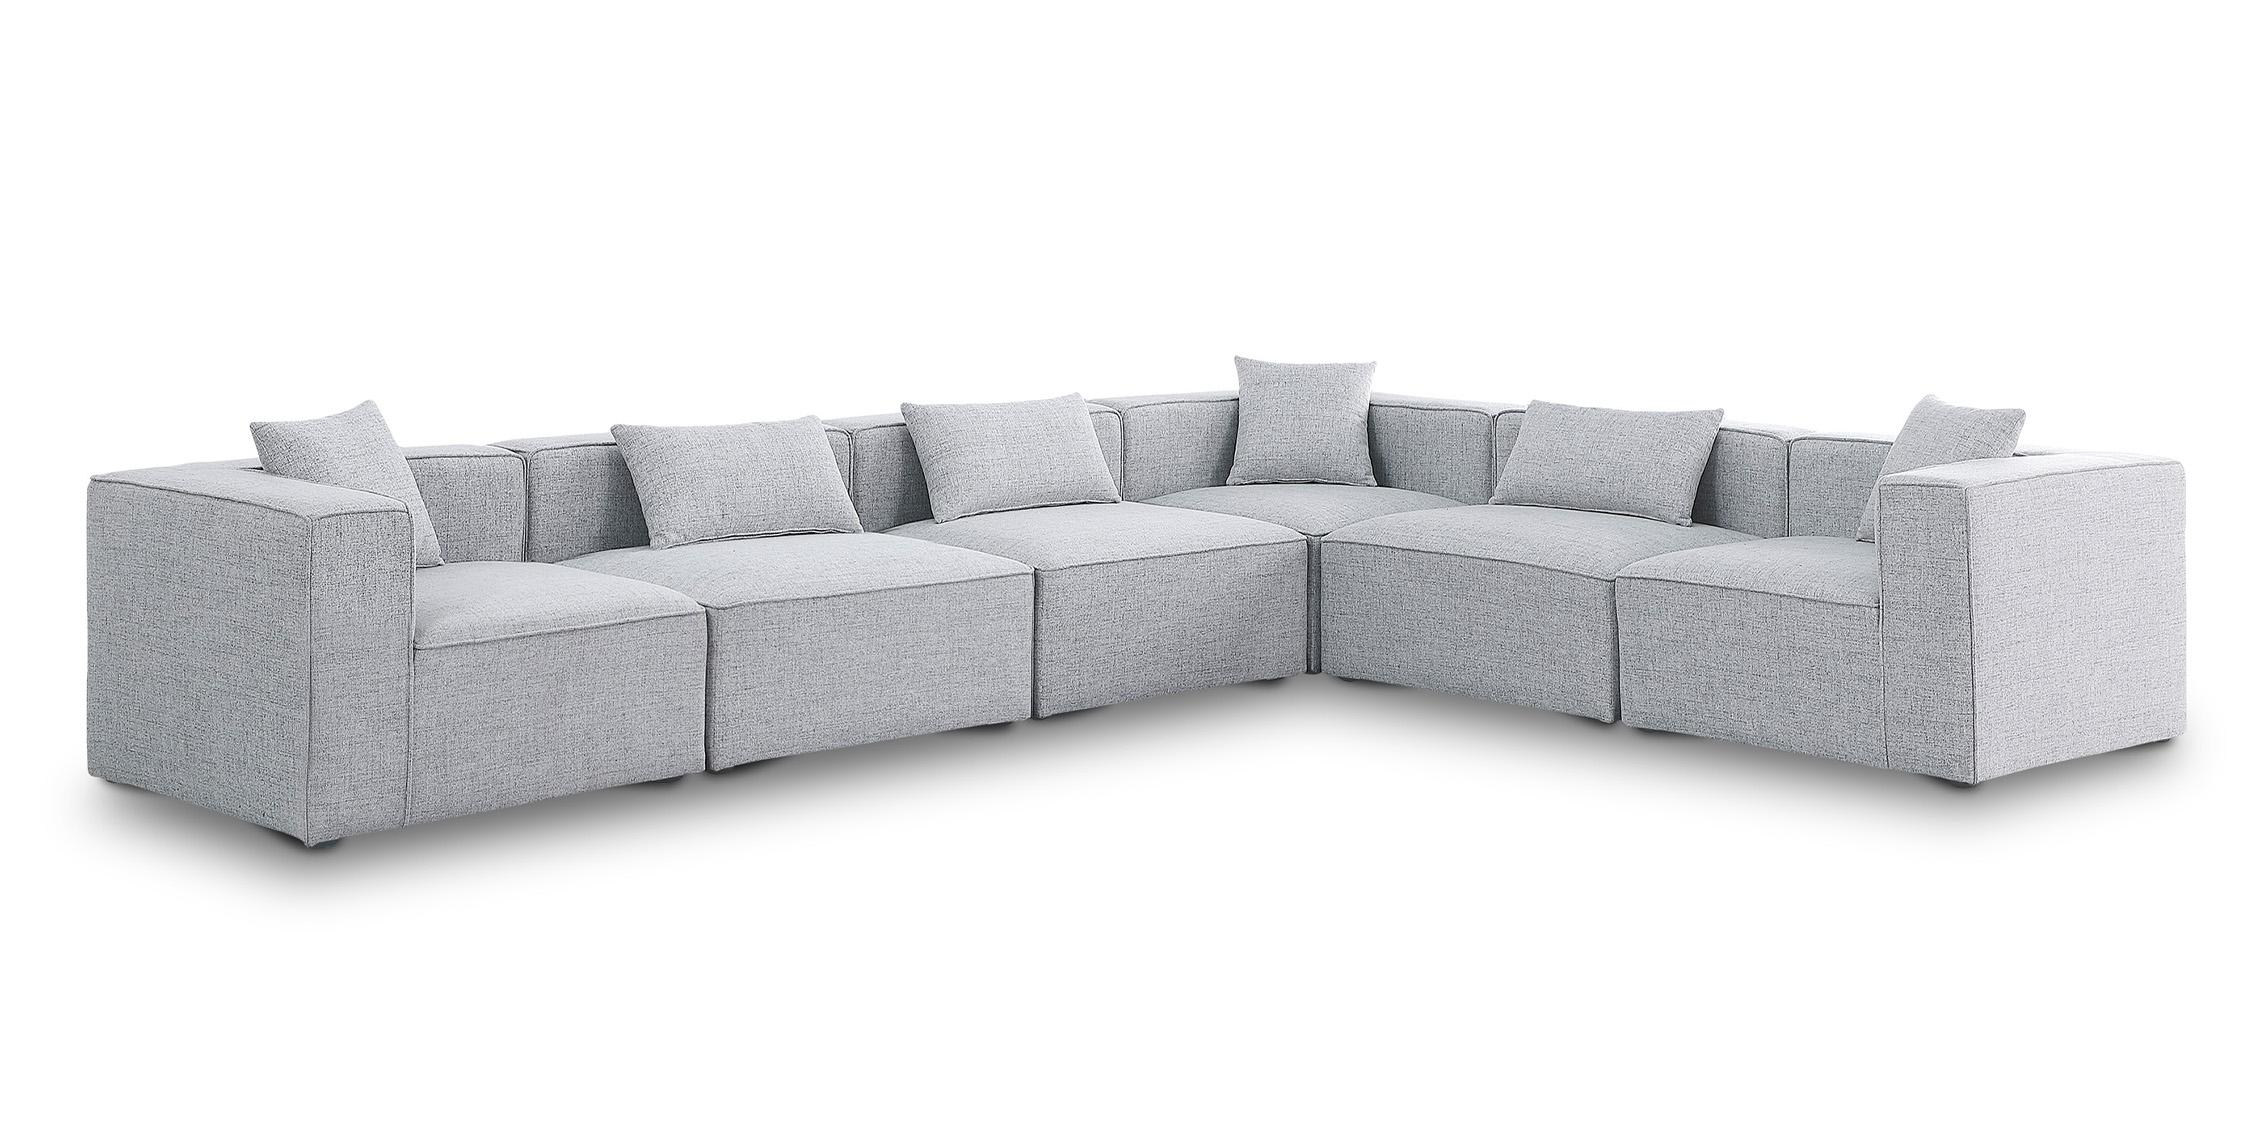 Contemporary, Modern Modular Sectional Sofa CUBE 630Grey-Sec6A 630Grey-Sec6A in Gray Linen